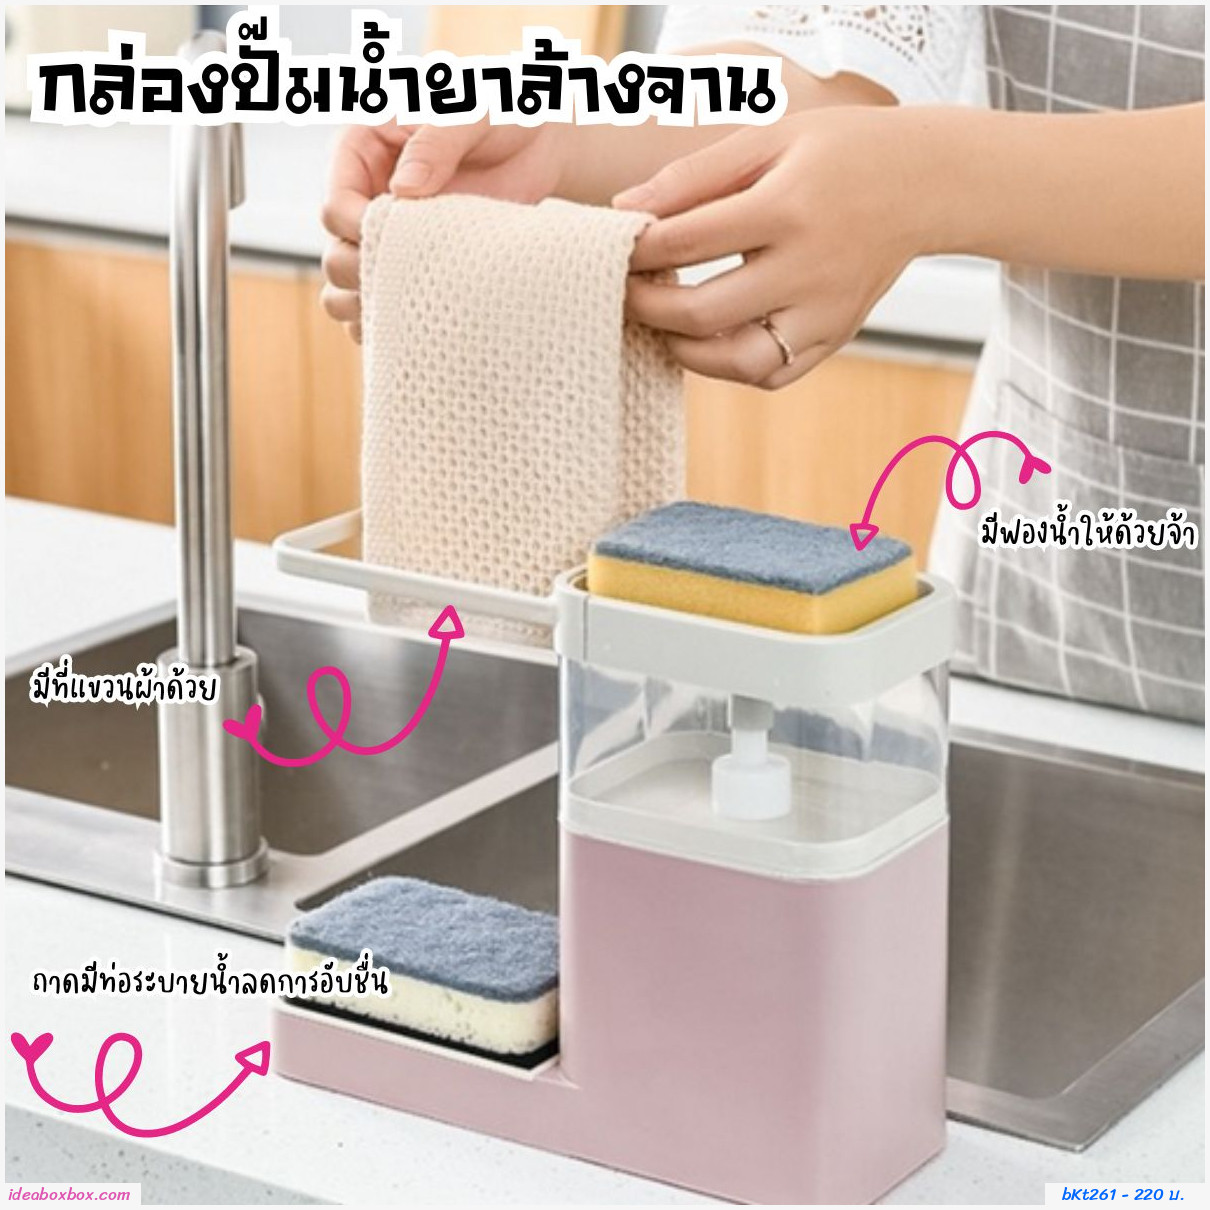 กล่องปั๊มน้ำยาล้างจานอเนกประสงค์พร้อมฟองน้ำ สีชมพู